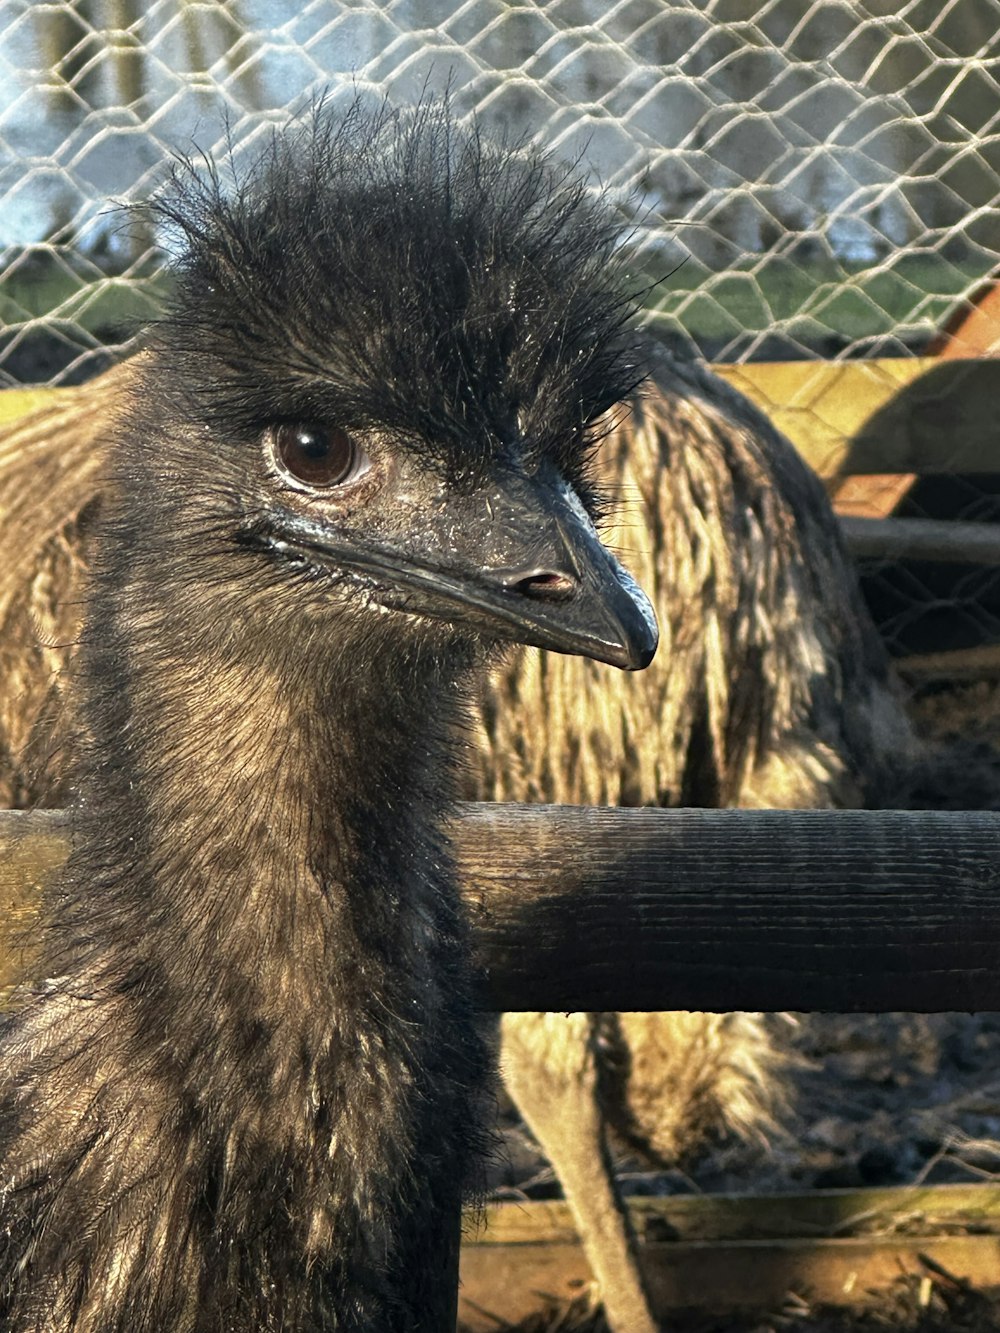 a close up of an ostrich near a fence